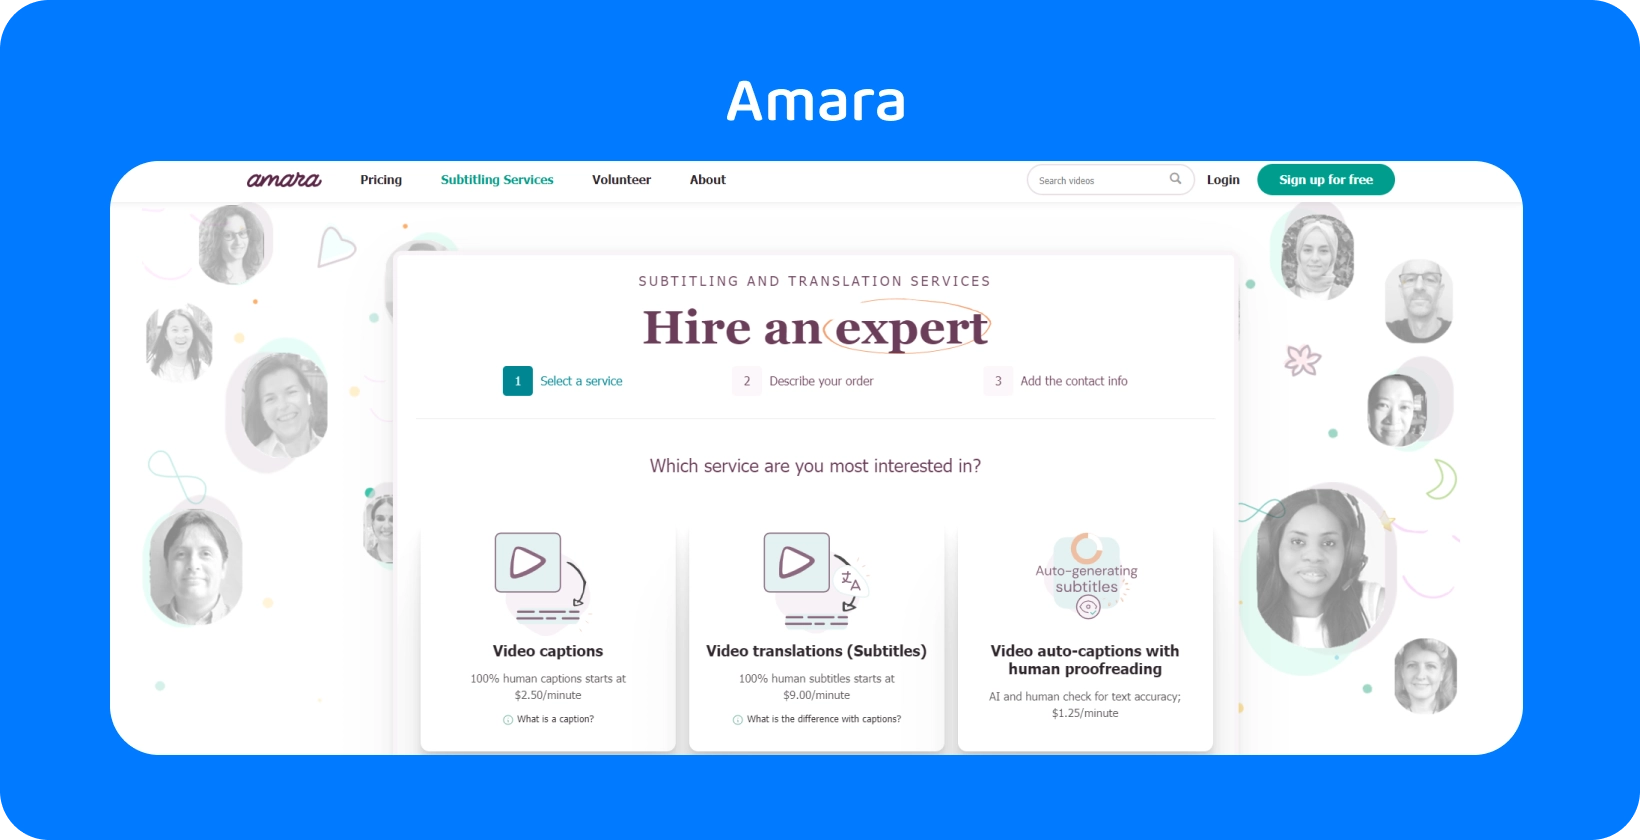 Amara का वेबपेज दिखाता है कि ऑनलाइन वीडियो में आसानी से उपशीर्षक कैसे जोड़ा जाए, जिससे दर्शकों की पहुंच बढ़ जाती है।